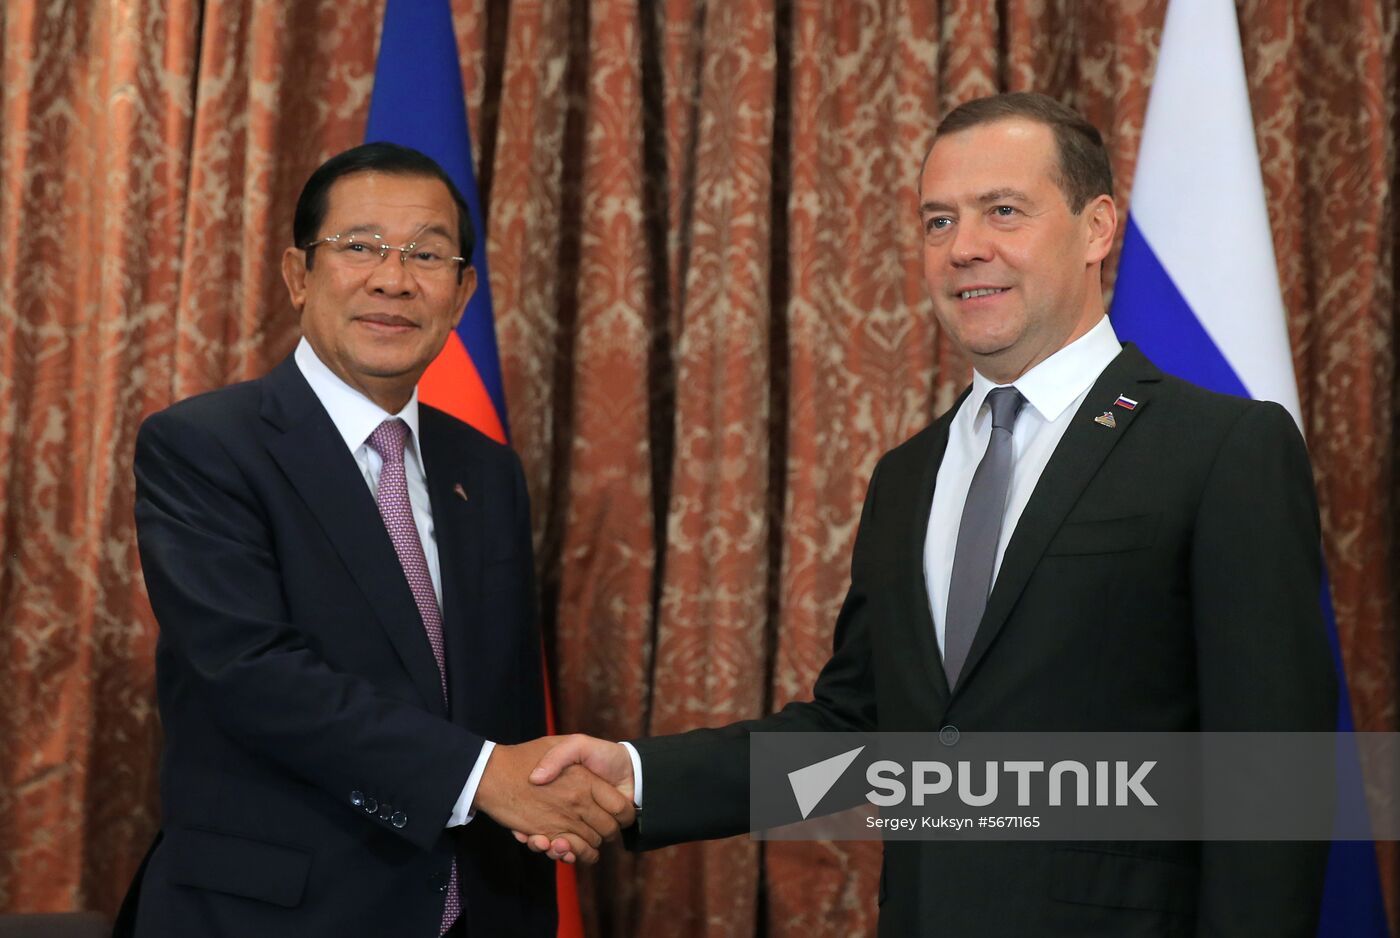 Prime Minister Dmitry Medvedev at ASEM summit